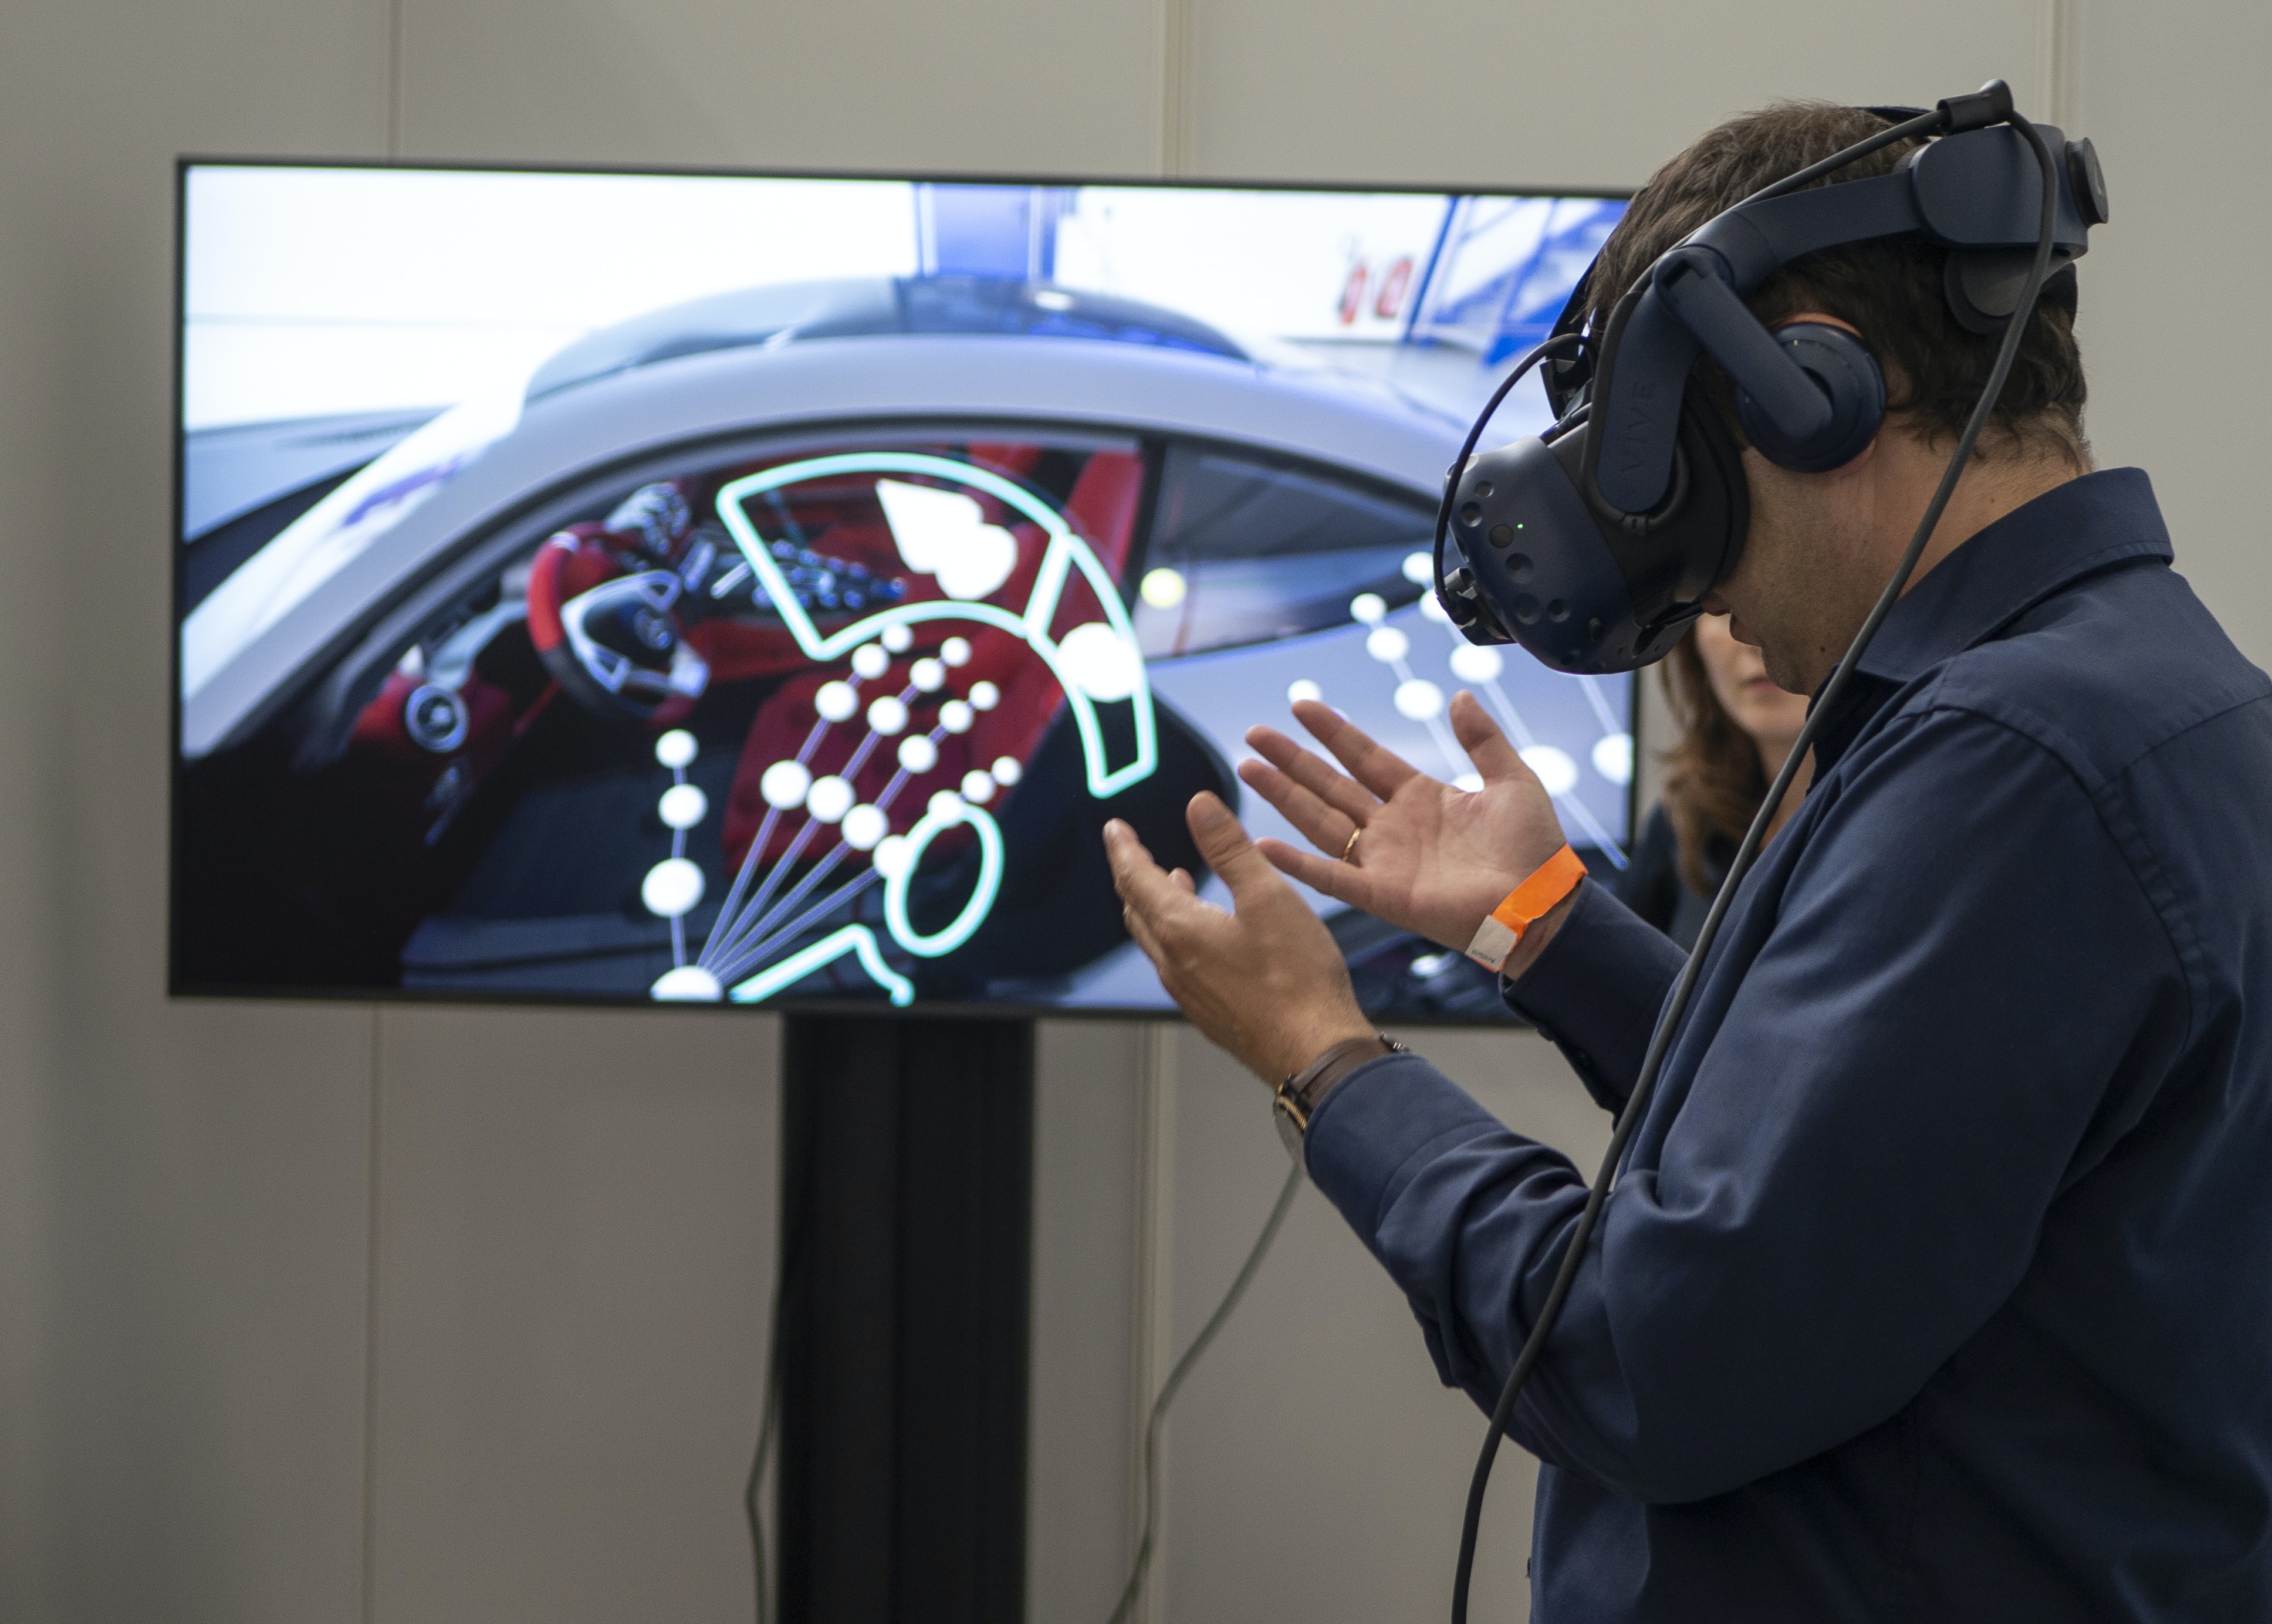 XR Expo 2019: Virtuaalitodellisuuden (vr), lisätyn todellisuuden (ar), sekatodellisuuden (mr) ja laajennetun todellisuuden (xr) näyttely